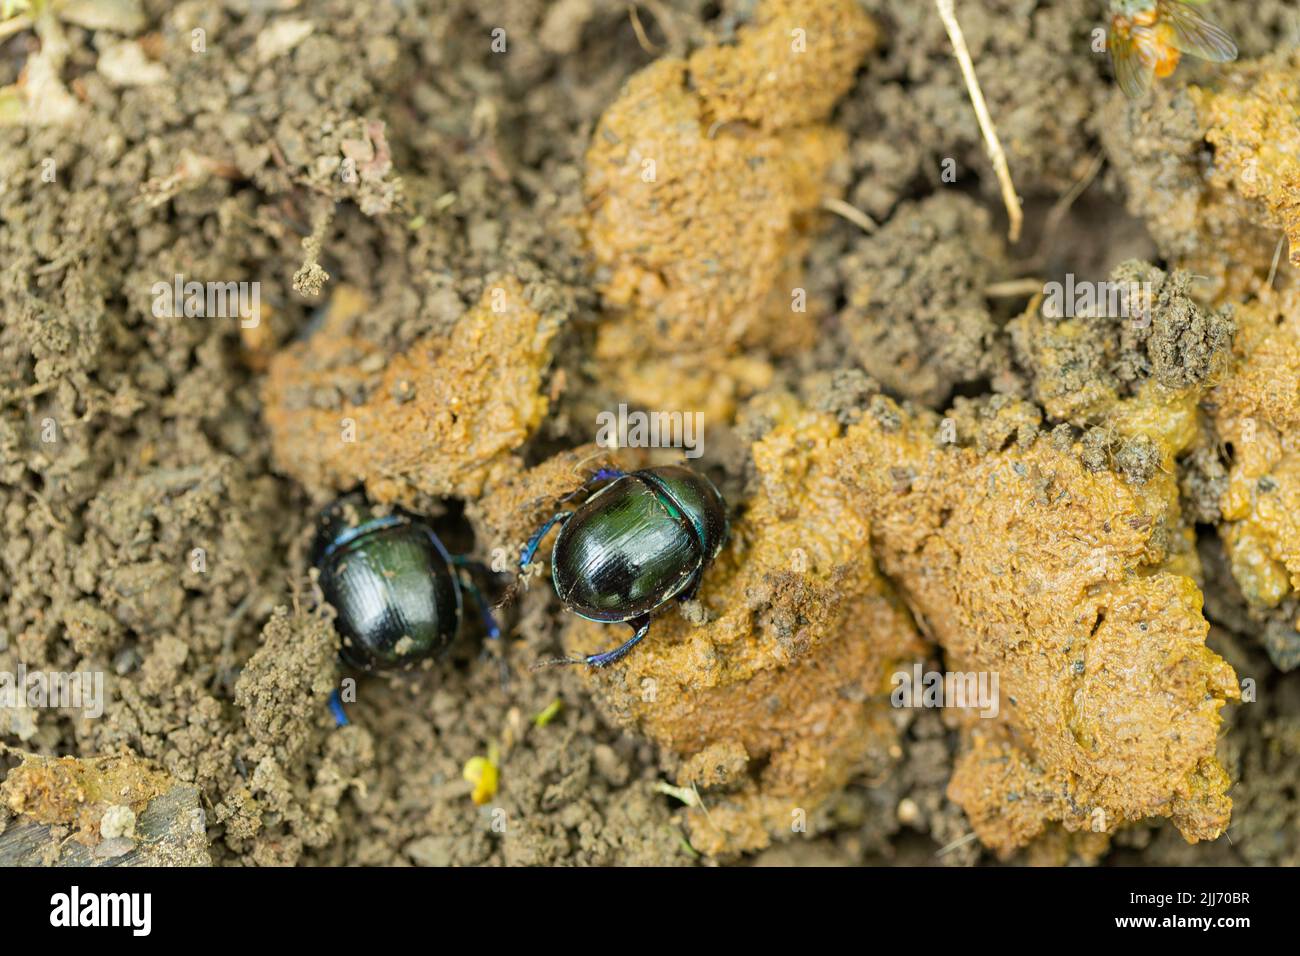 El escarabajo del dor del dor Geotrupes stercorarius, enterrando en los excrementos, el parque lineal de Cinderford, Gloucestershire, Reino Unido, Mayo Foto de stock